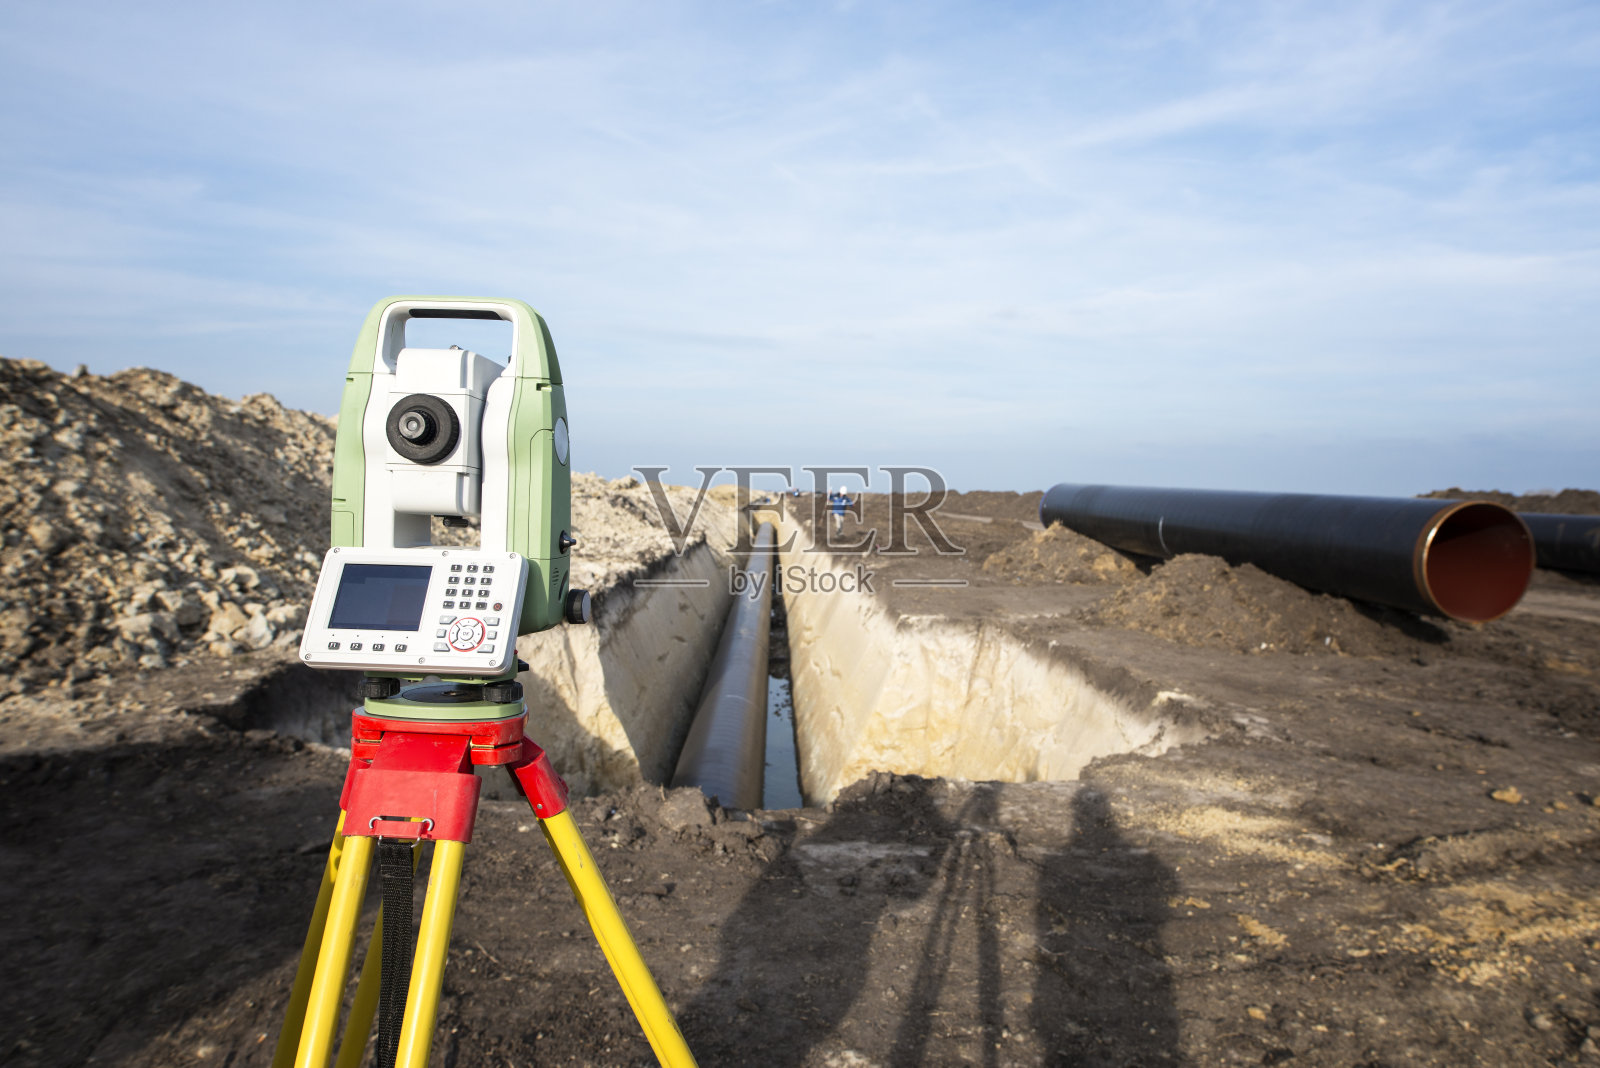 管道施工中测量GPS系统设备。土建工程师测量坐标，以精确地铺设管道在地面上的气体分配。照片摄影图片